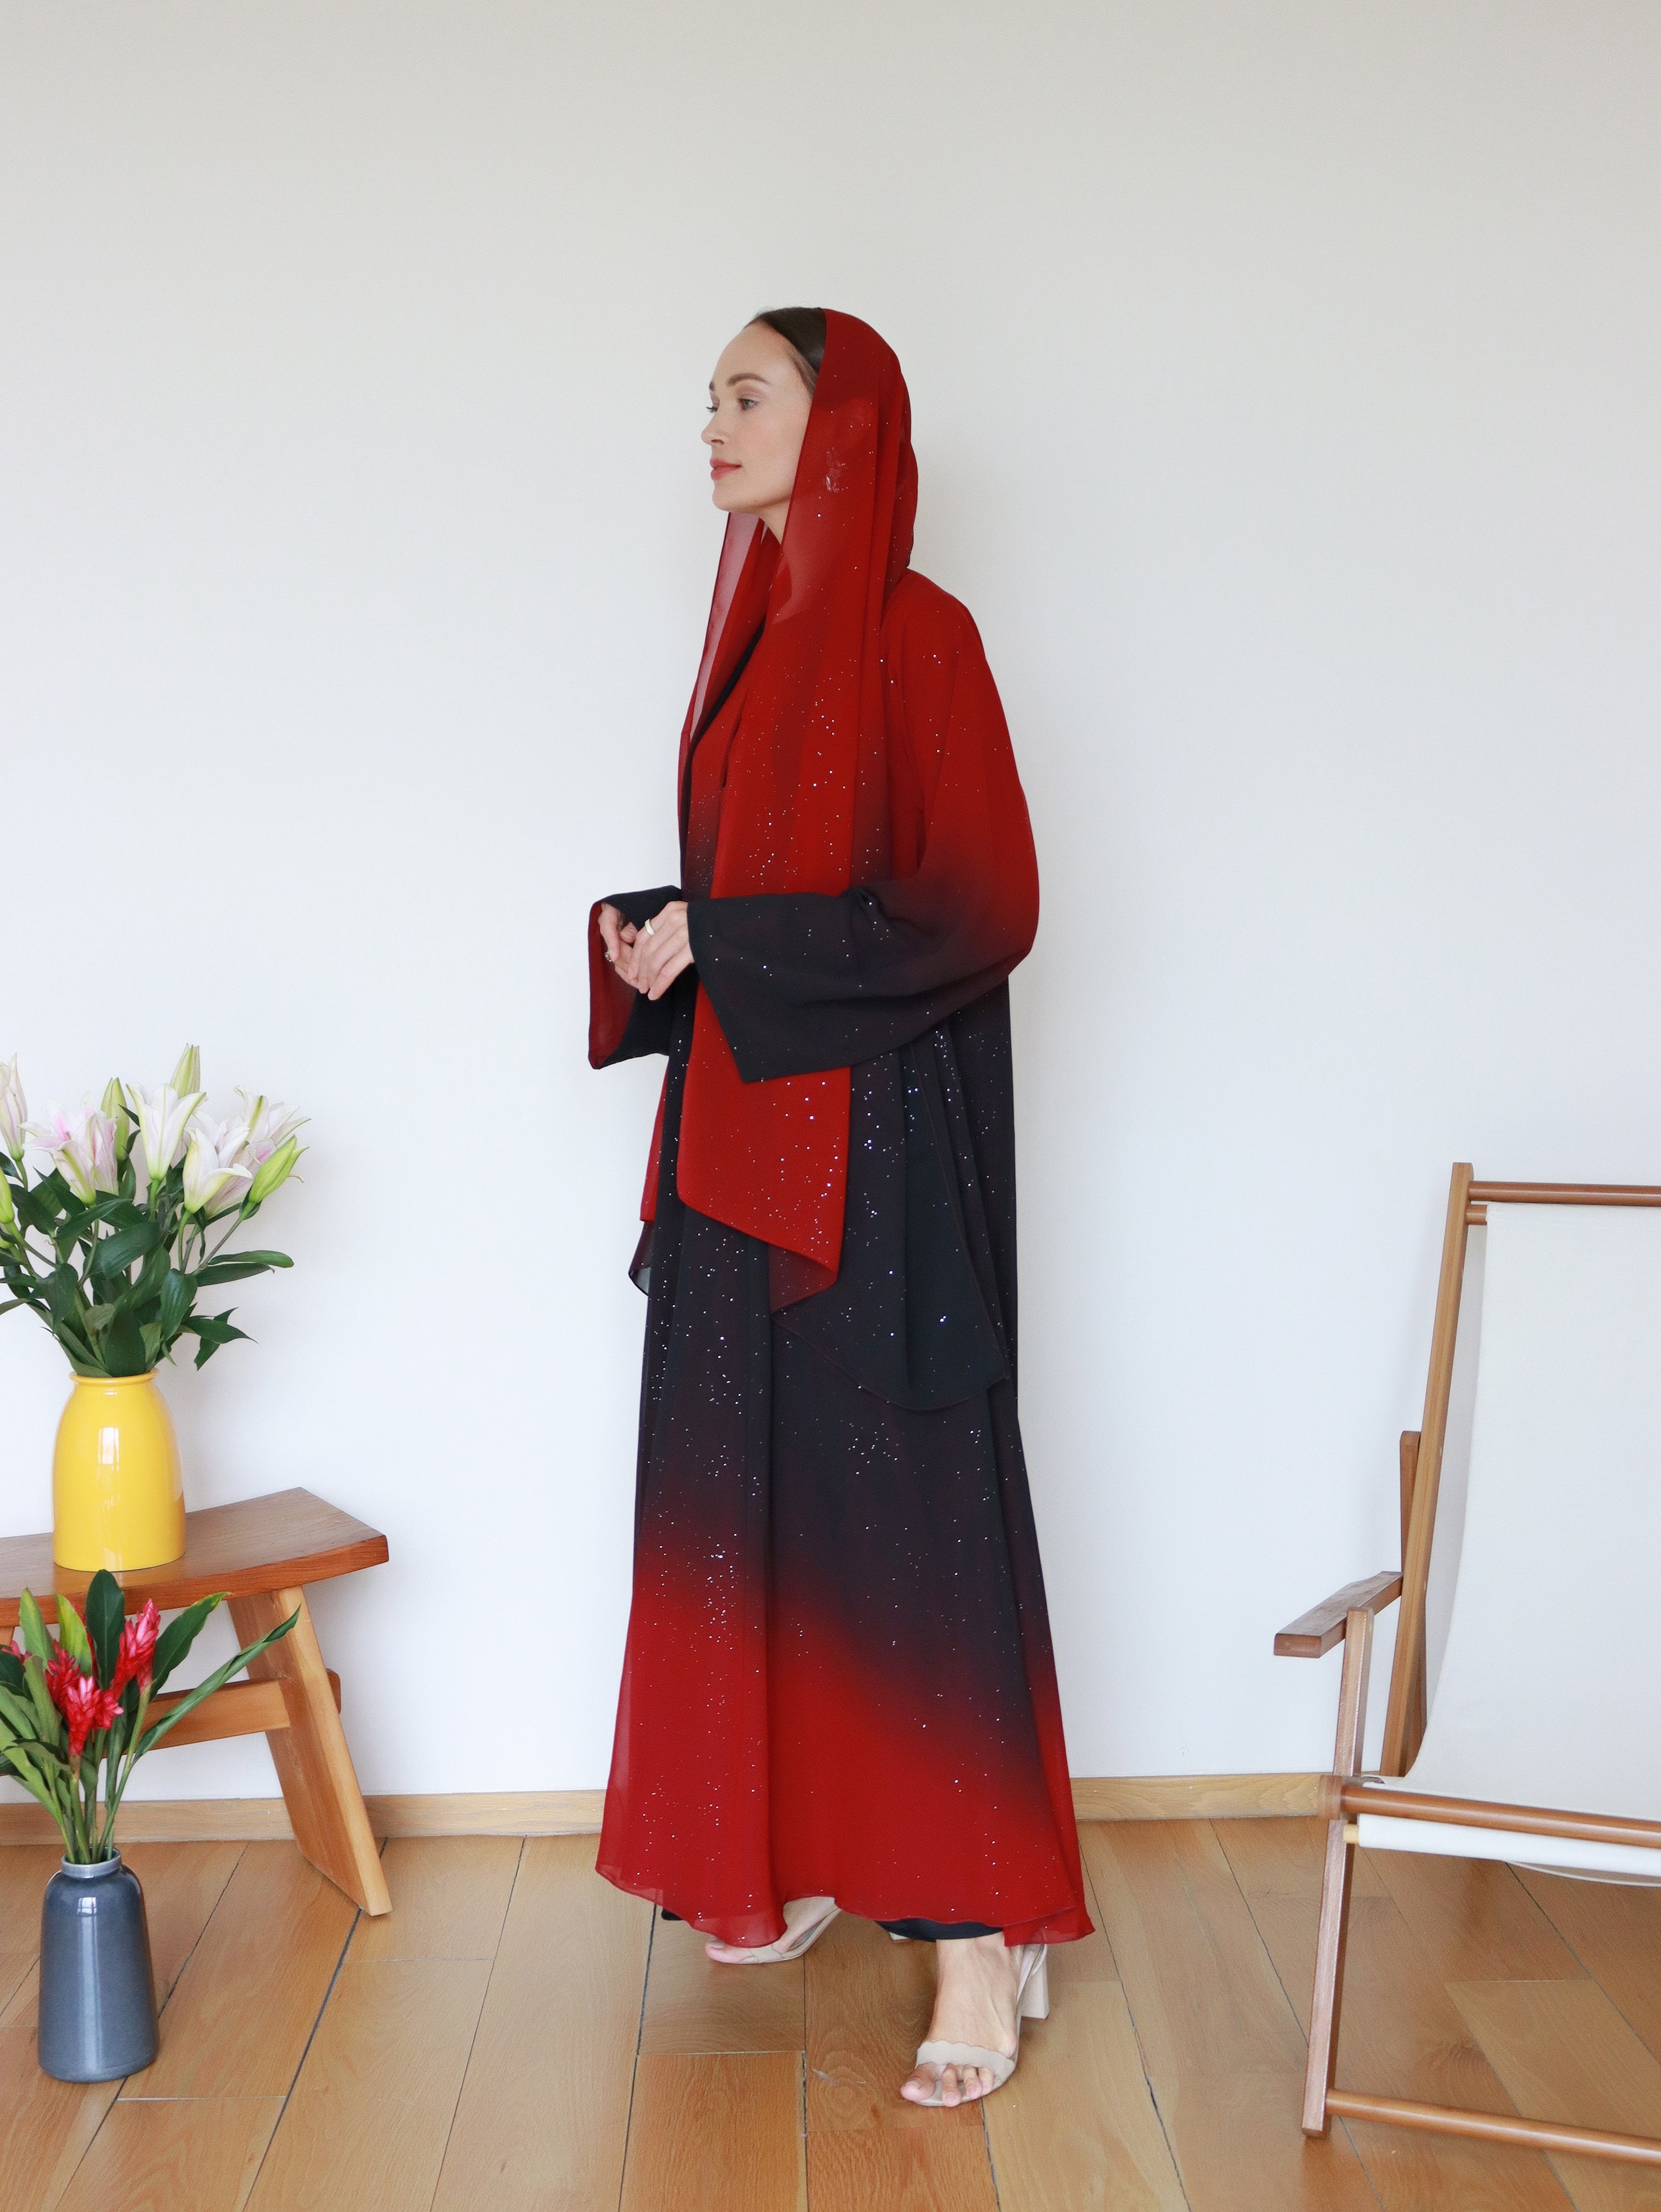 Najma Ombre Abaya in Red & Black